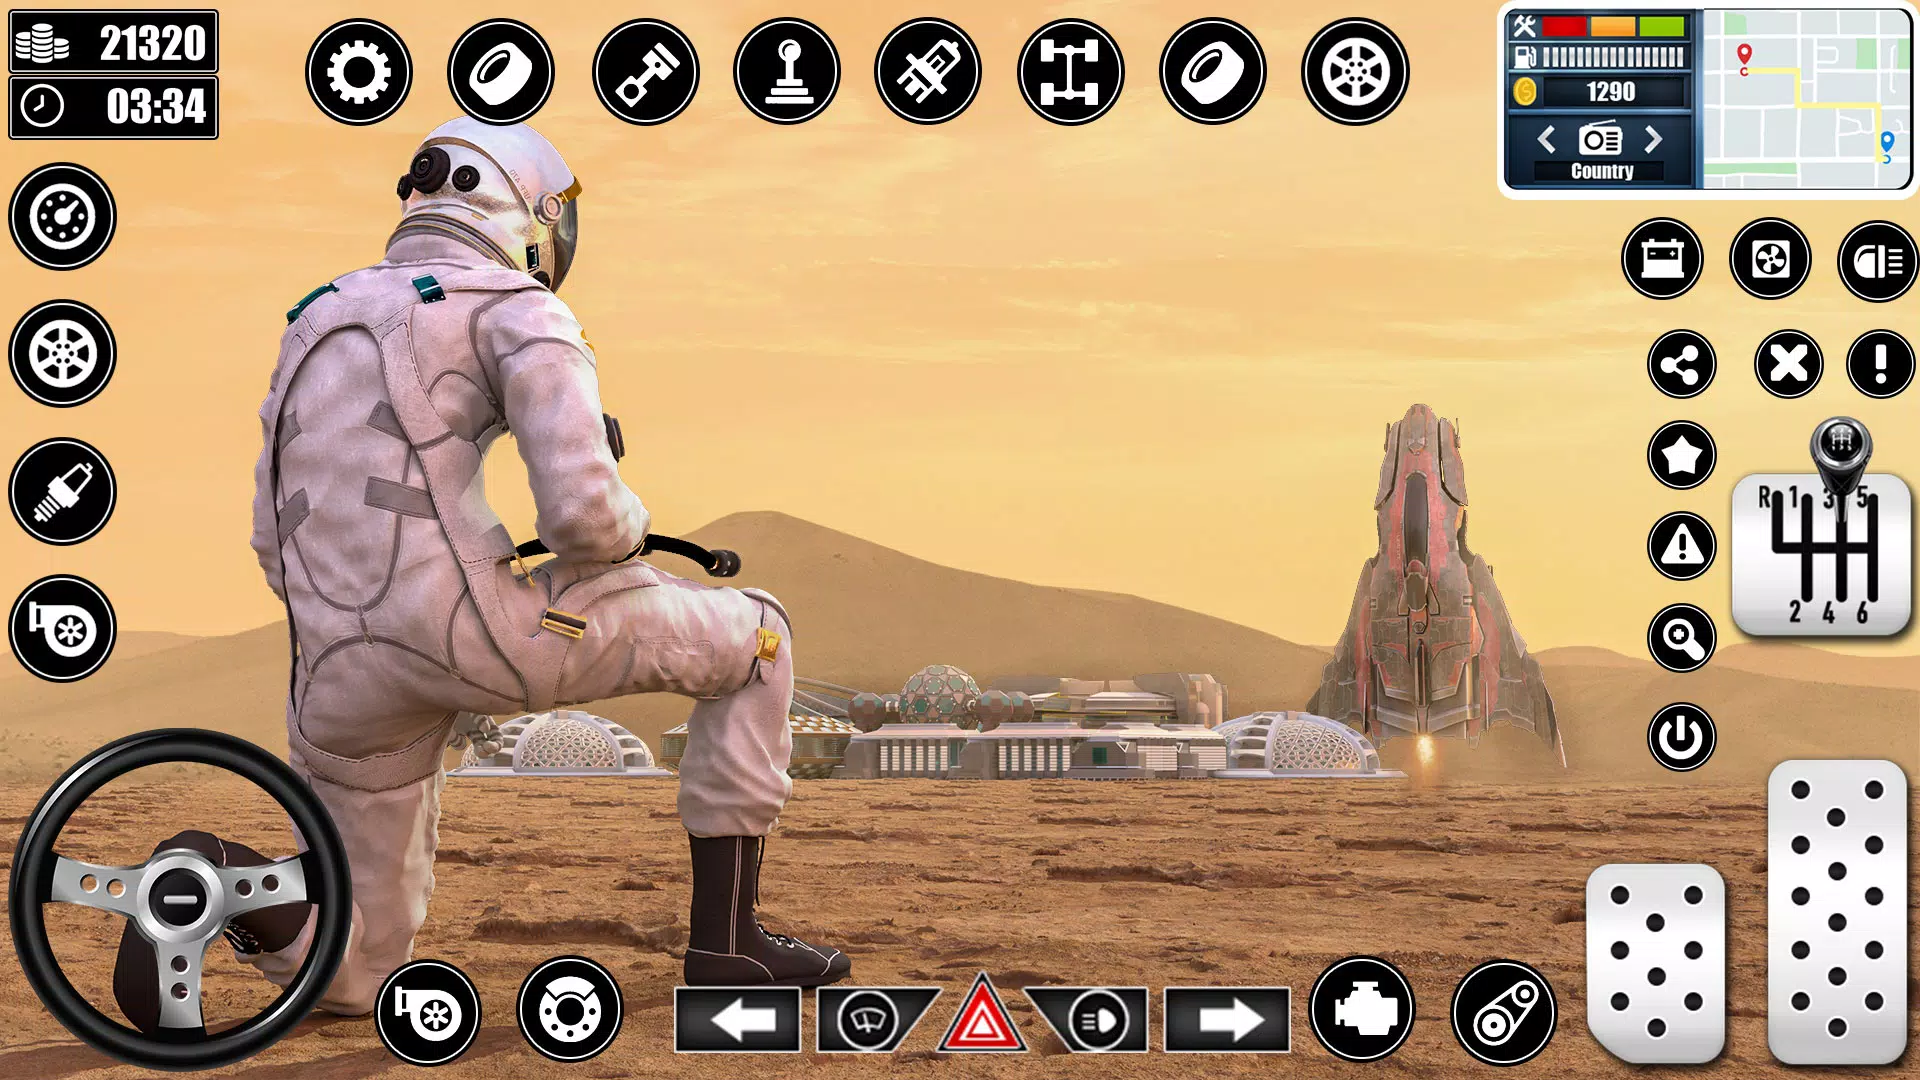 Espaço Estação Construção Simulador 2018: Planeta Marte Colônia  Sobrevivência Cidade Construção Jogos Para Livre::Appstore for  Android